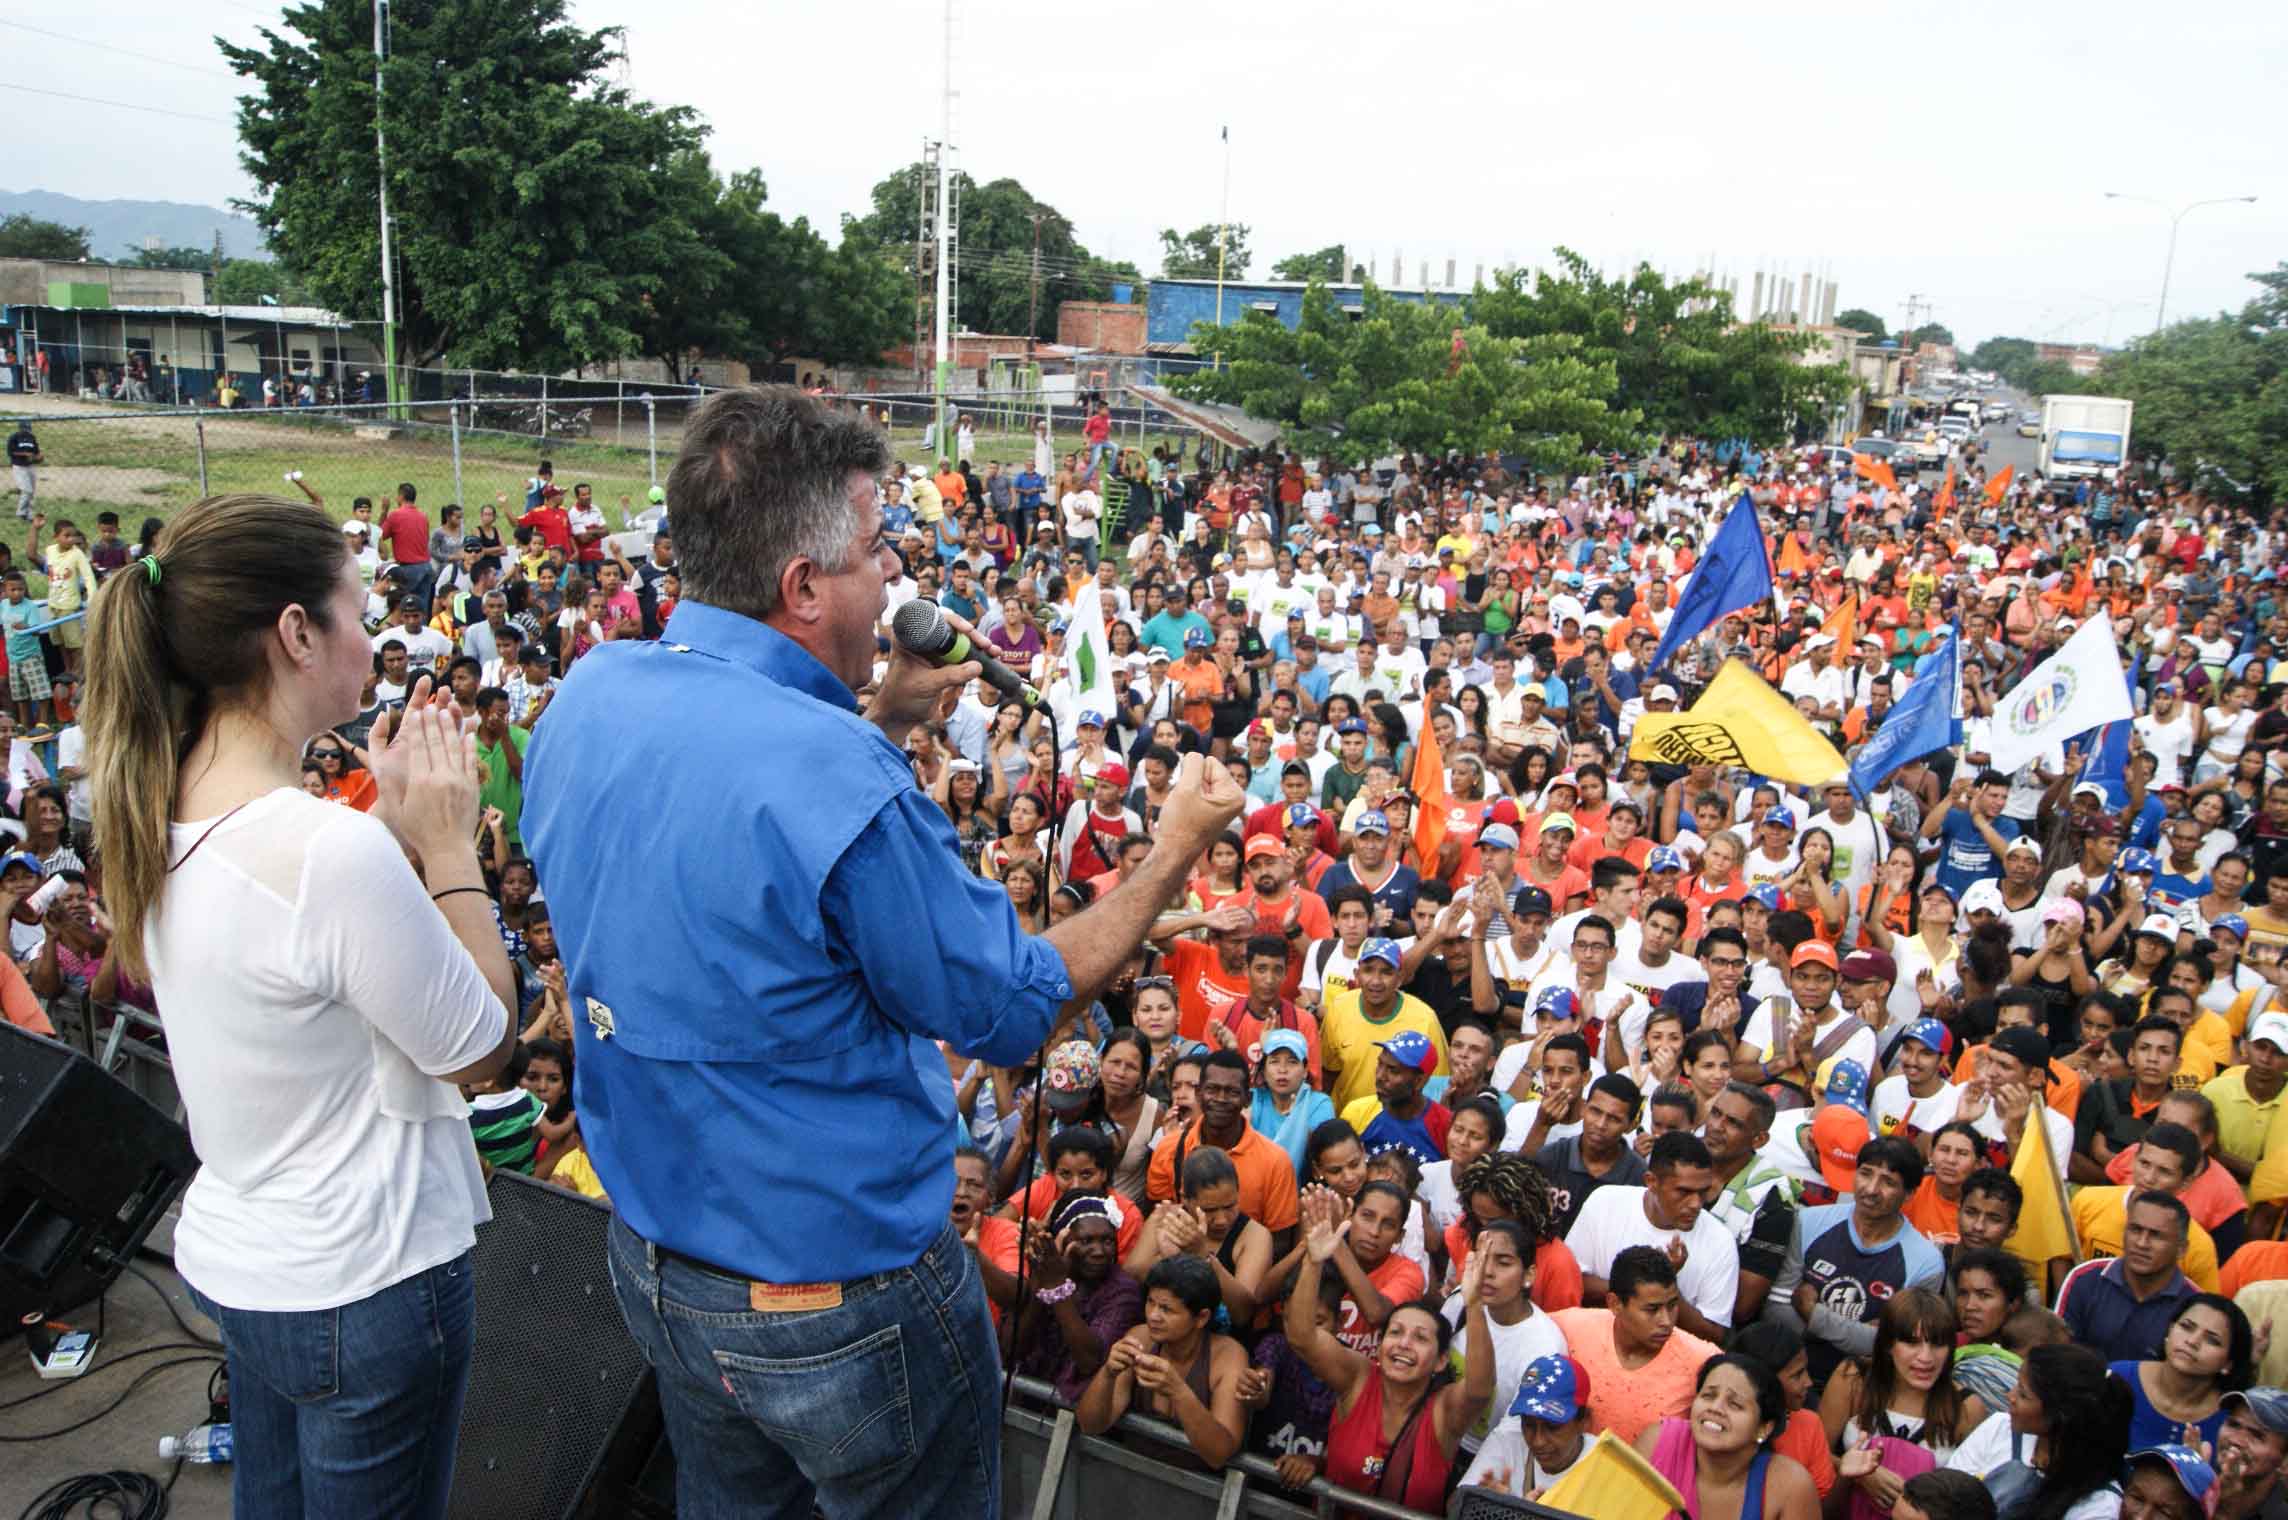 Alejandro Feo La Cruz: Vamos a votar por el Mejor Carabobo que tanto hemos soñado